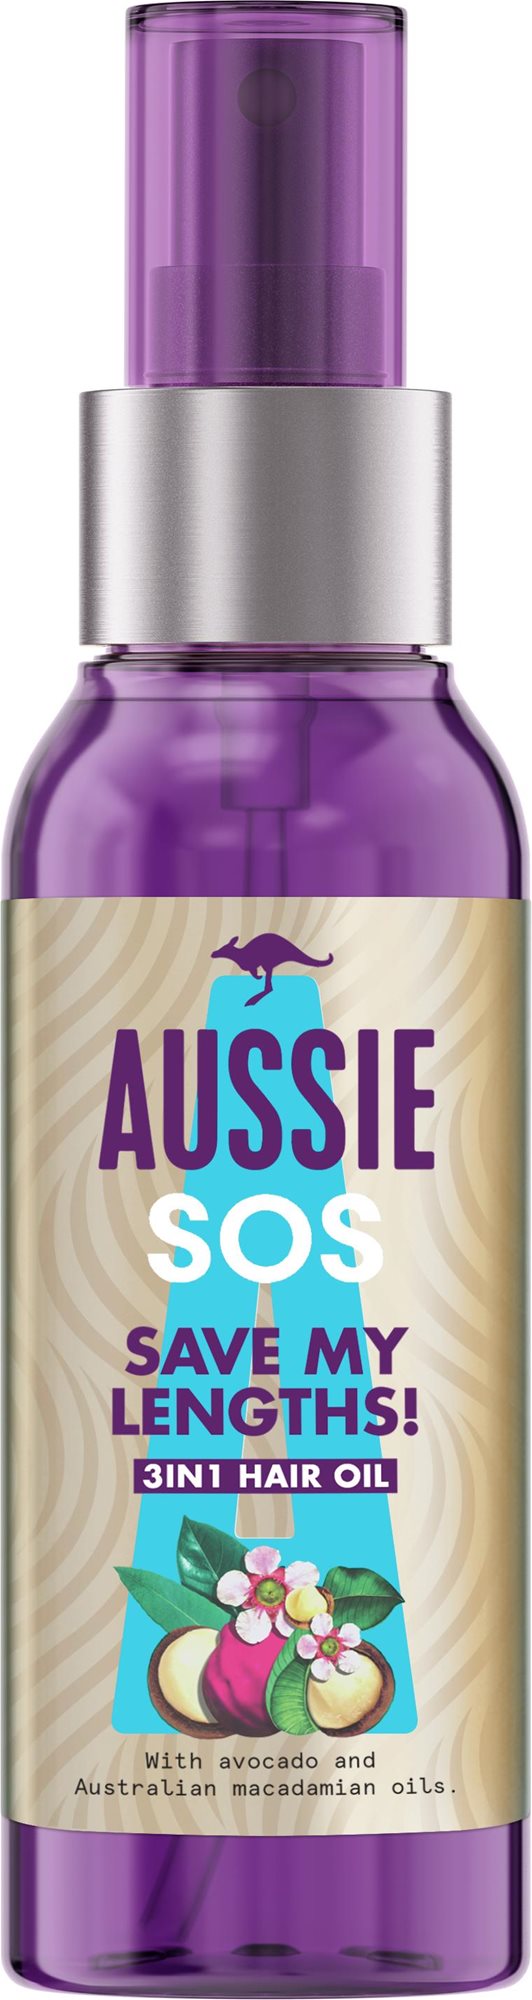 Aussie SOS 3-in-1 Hair Oil Save My Lengths, 100 ml